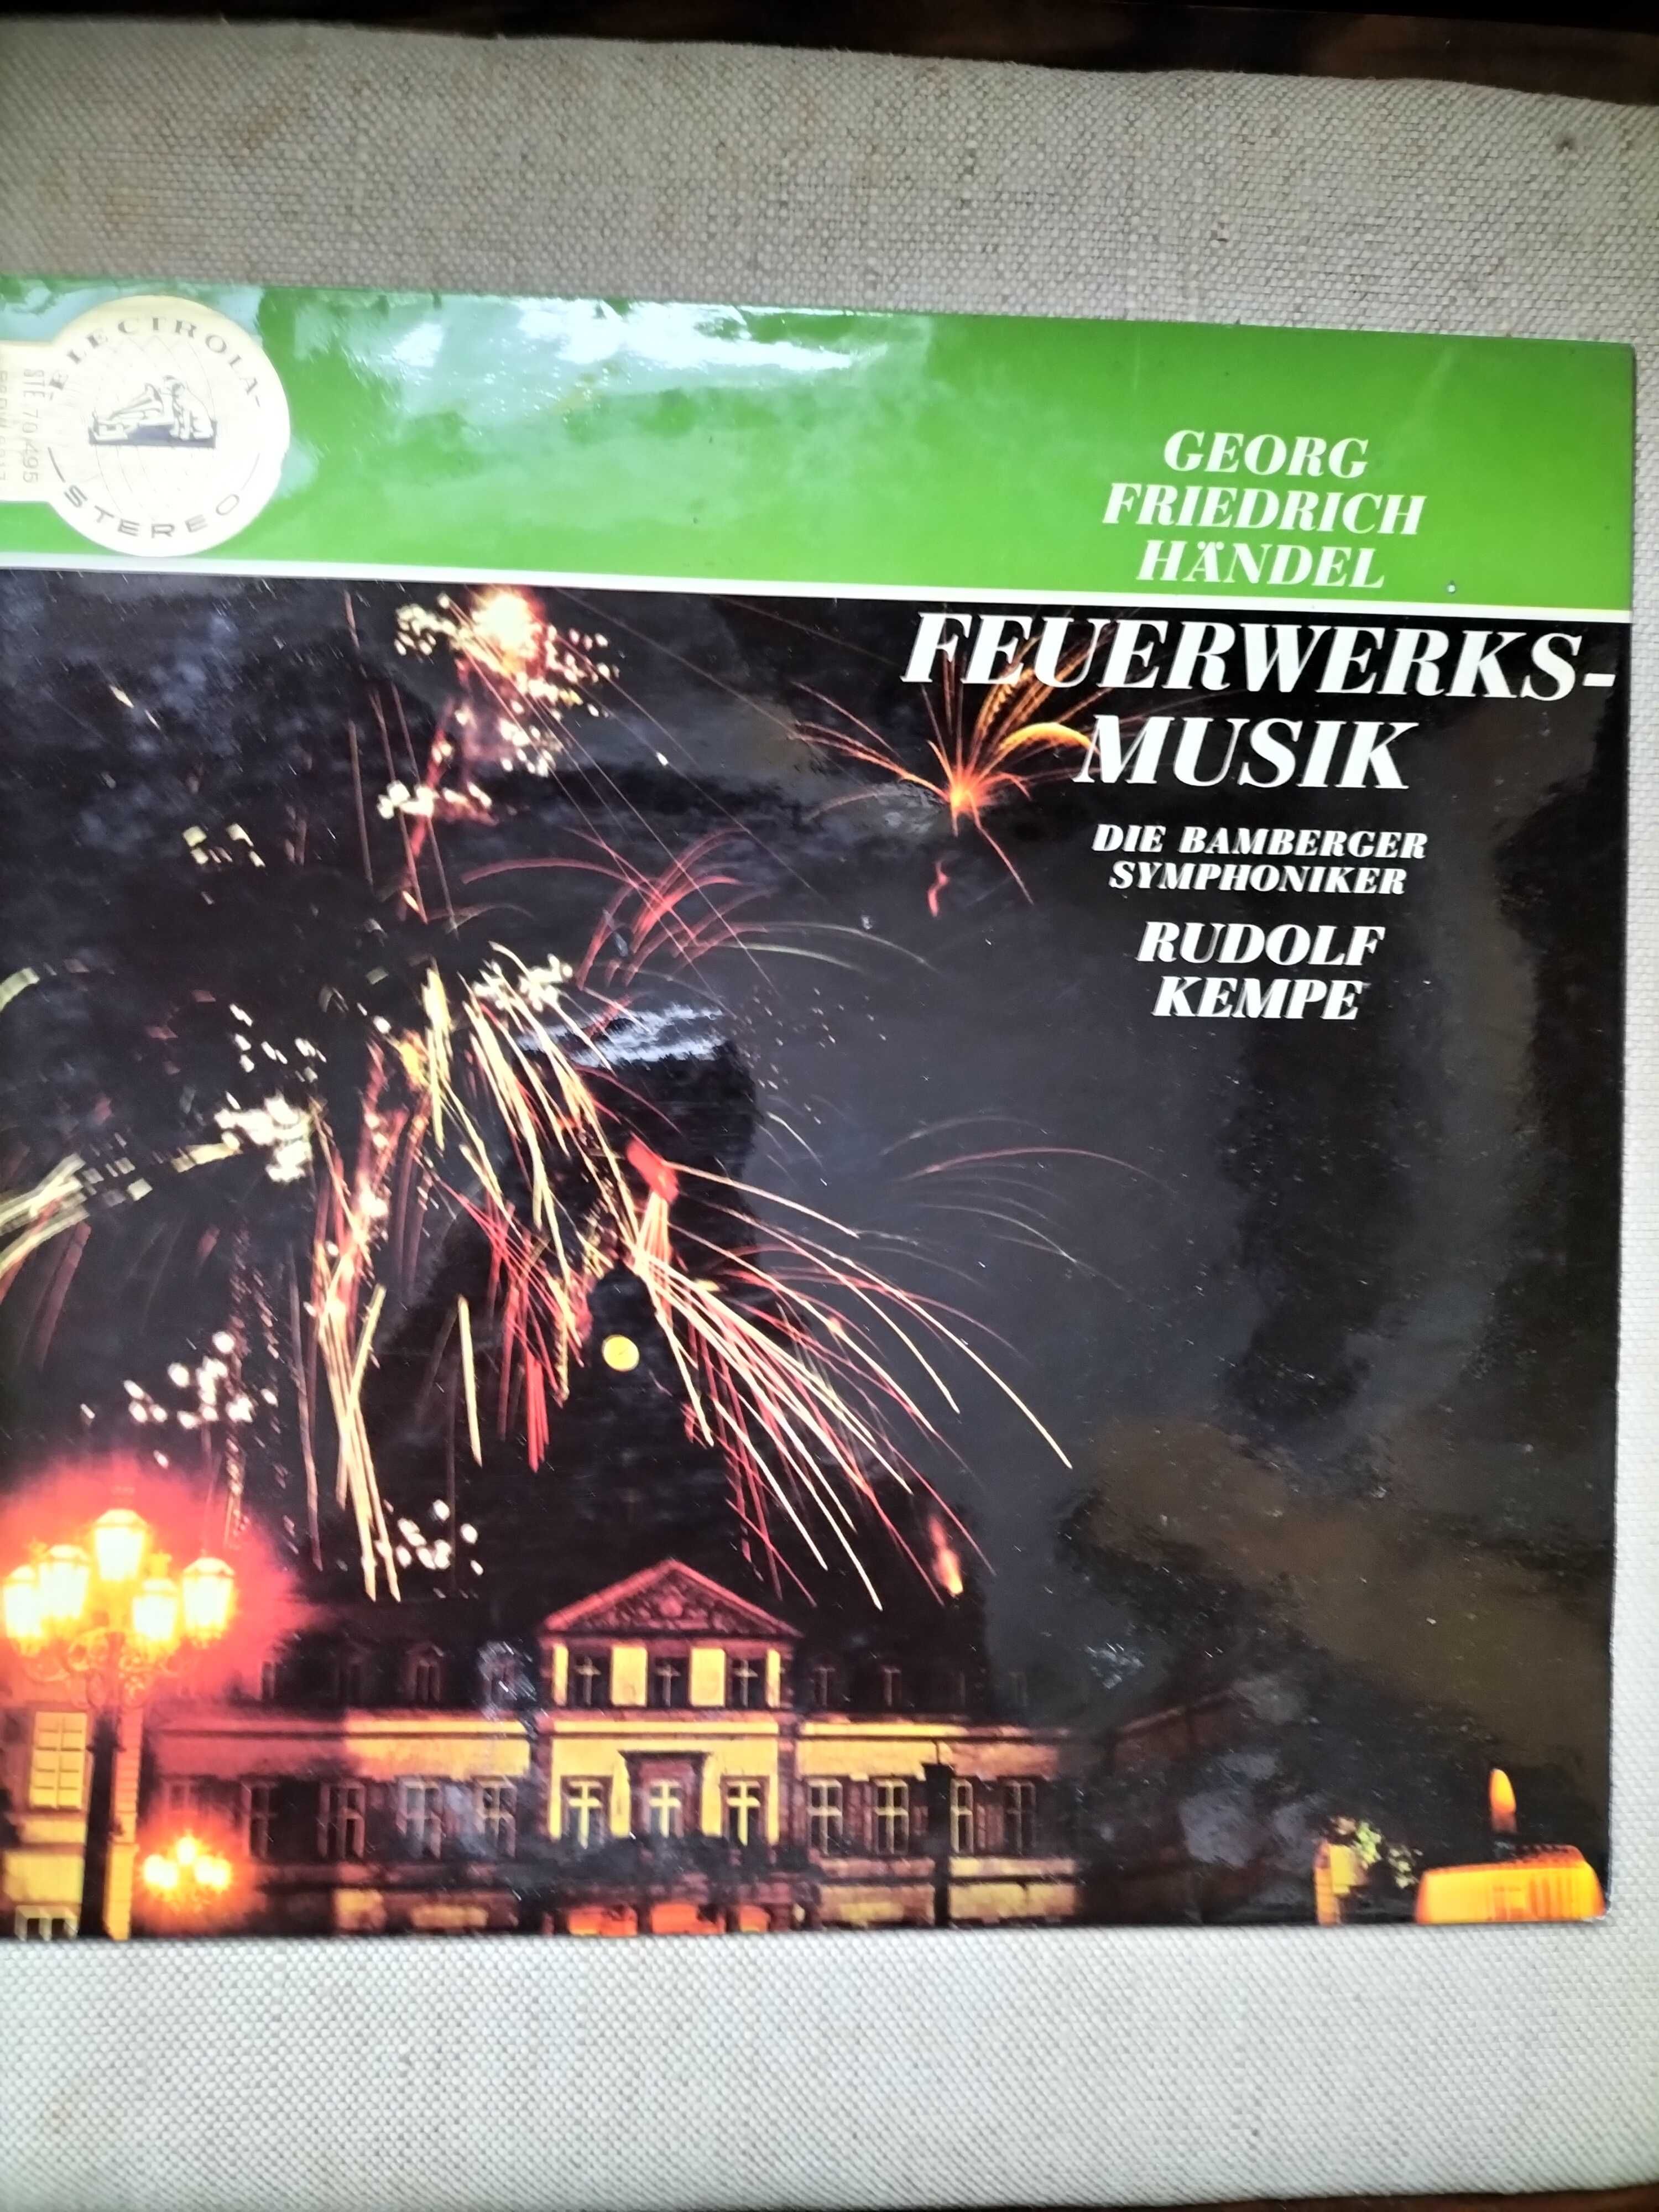 Winyl Georg  Friedrich Handel   " Feuerwerksmusik " mint